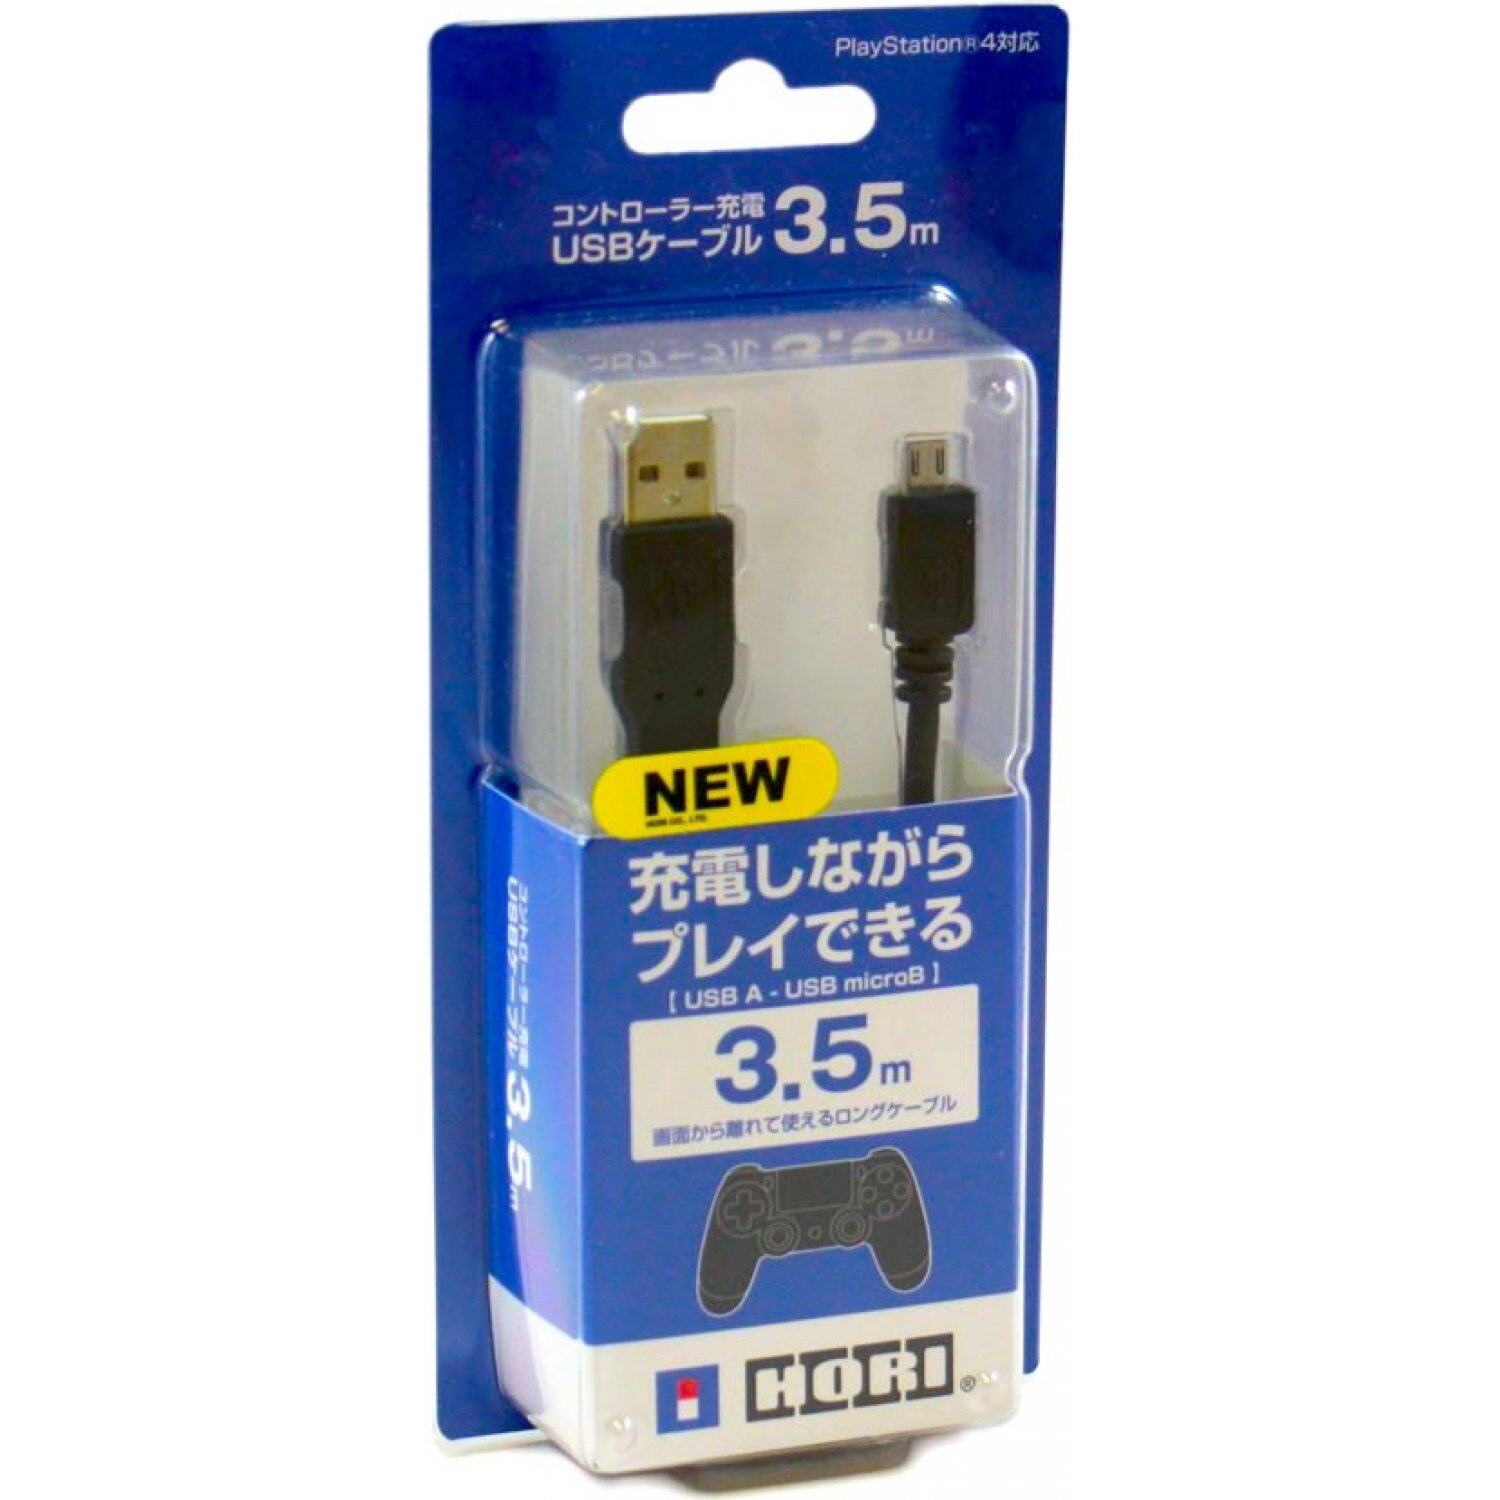 สายชาร์จจอย Ps.4 แบบยาว 3.5 เมตร (USB Charger for Ps4)(USB Charger)(สายUSB Ps4)(สายชาร์จ ps4)